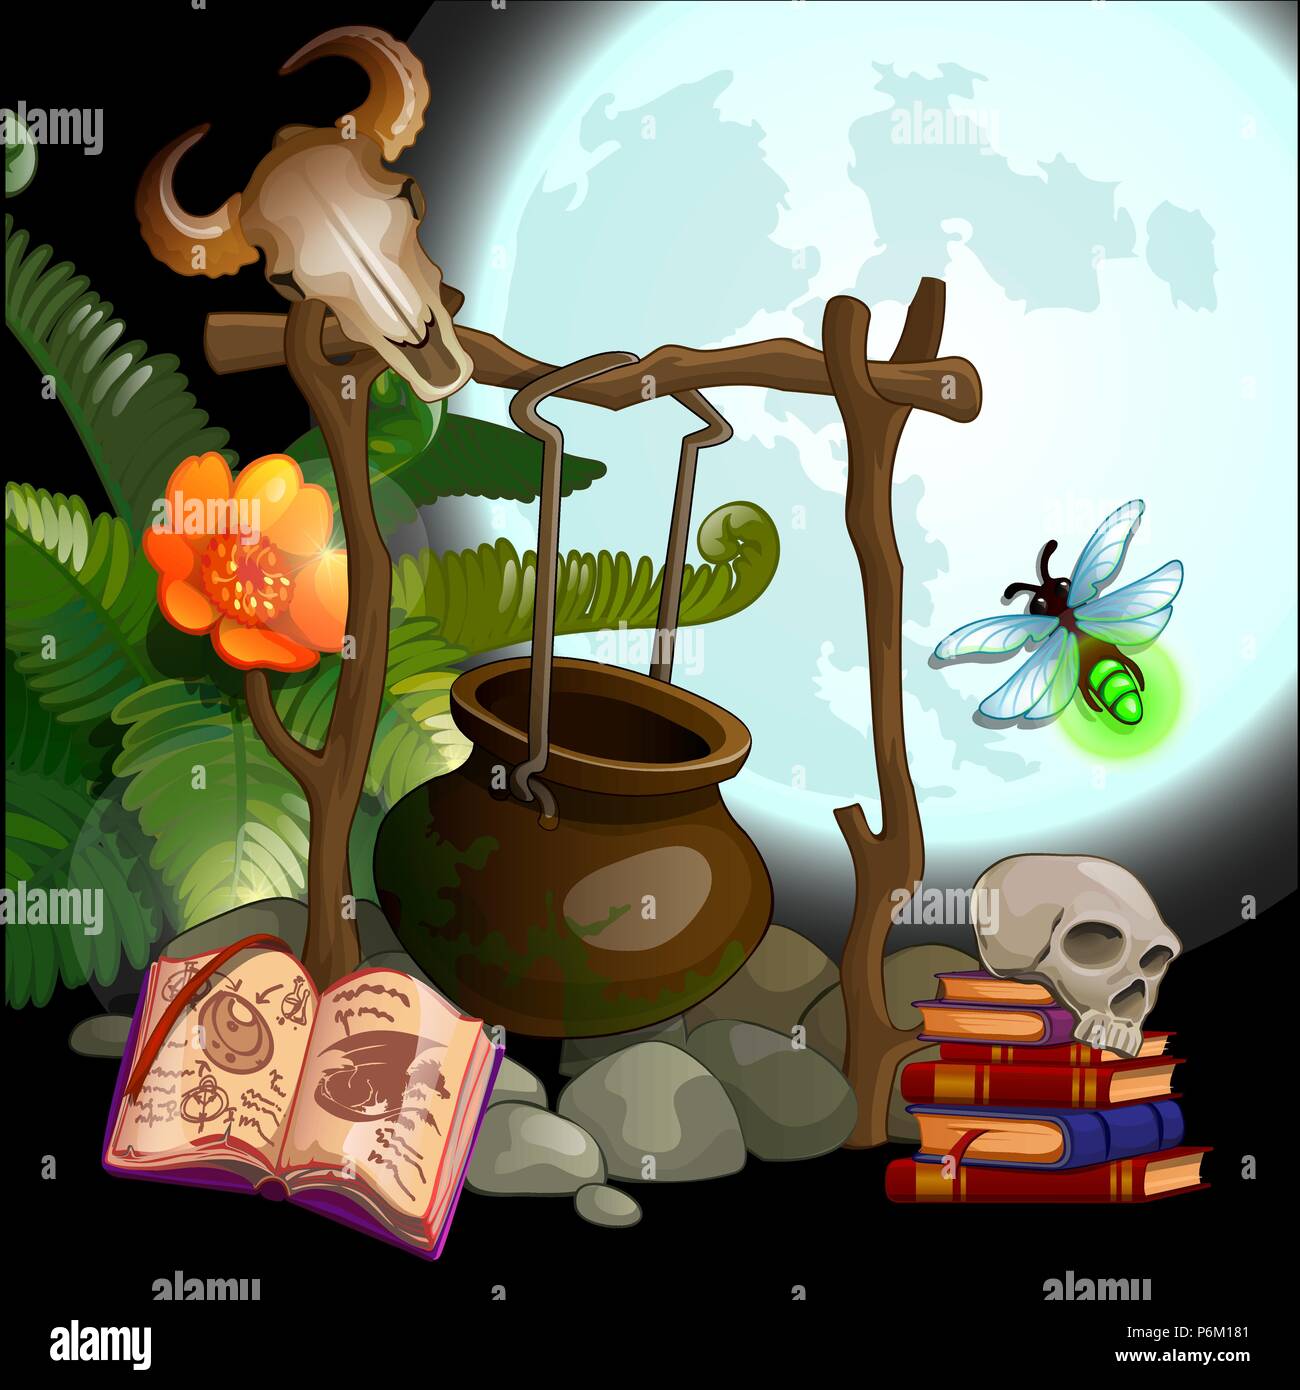 Il set di attributi per eseguire riti magici. Vector cartoon close-up illustrazione. Illustrazione Vettoriale